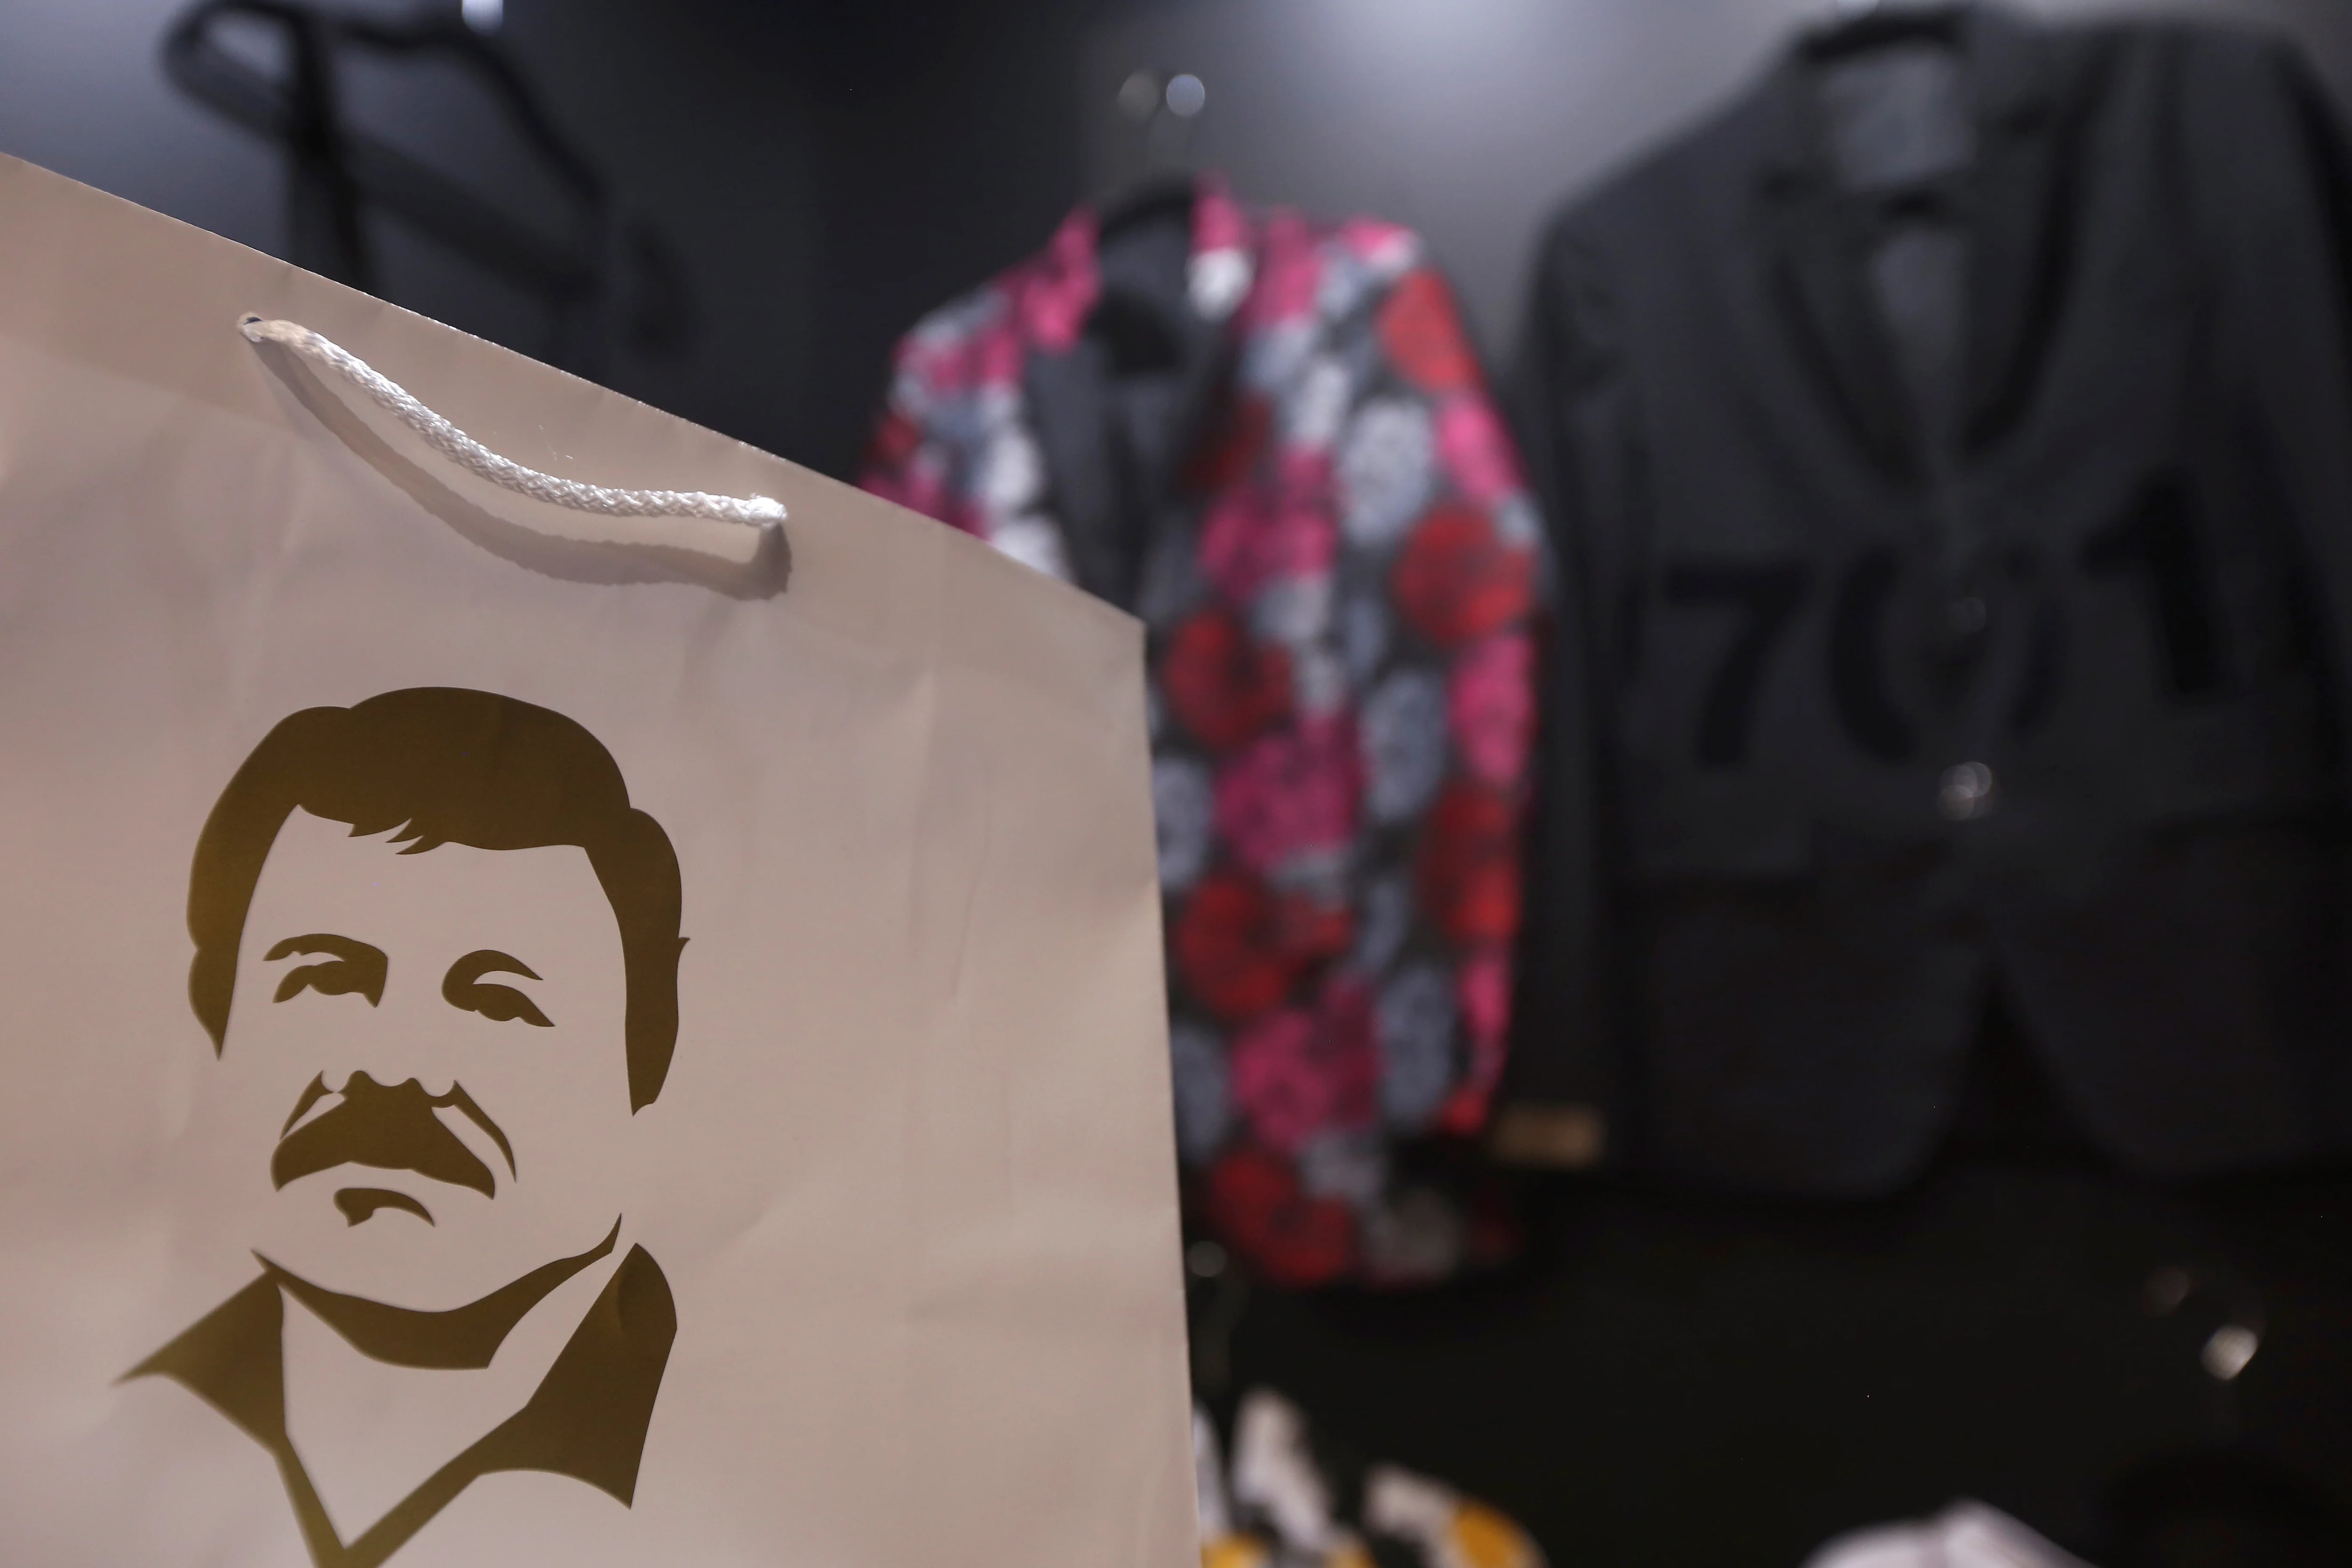 El rostro de "El Chapo" en una bolsa
(Foto: REUTERS/Fernando Carranza/Archivo)